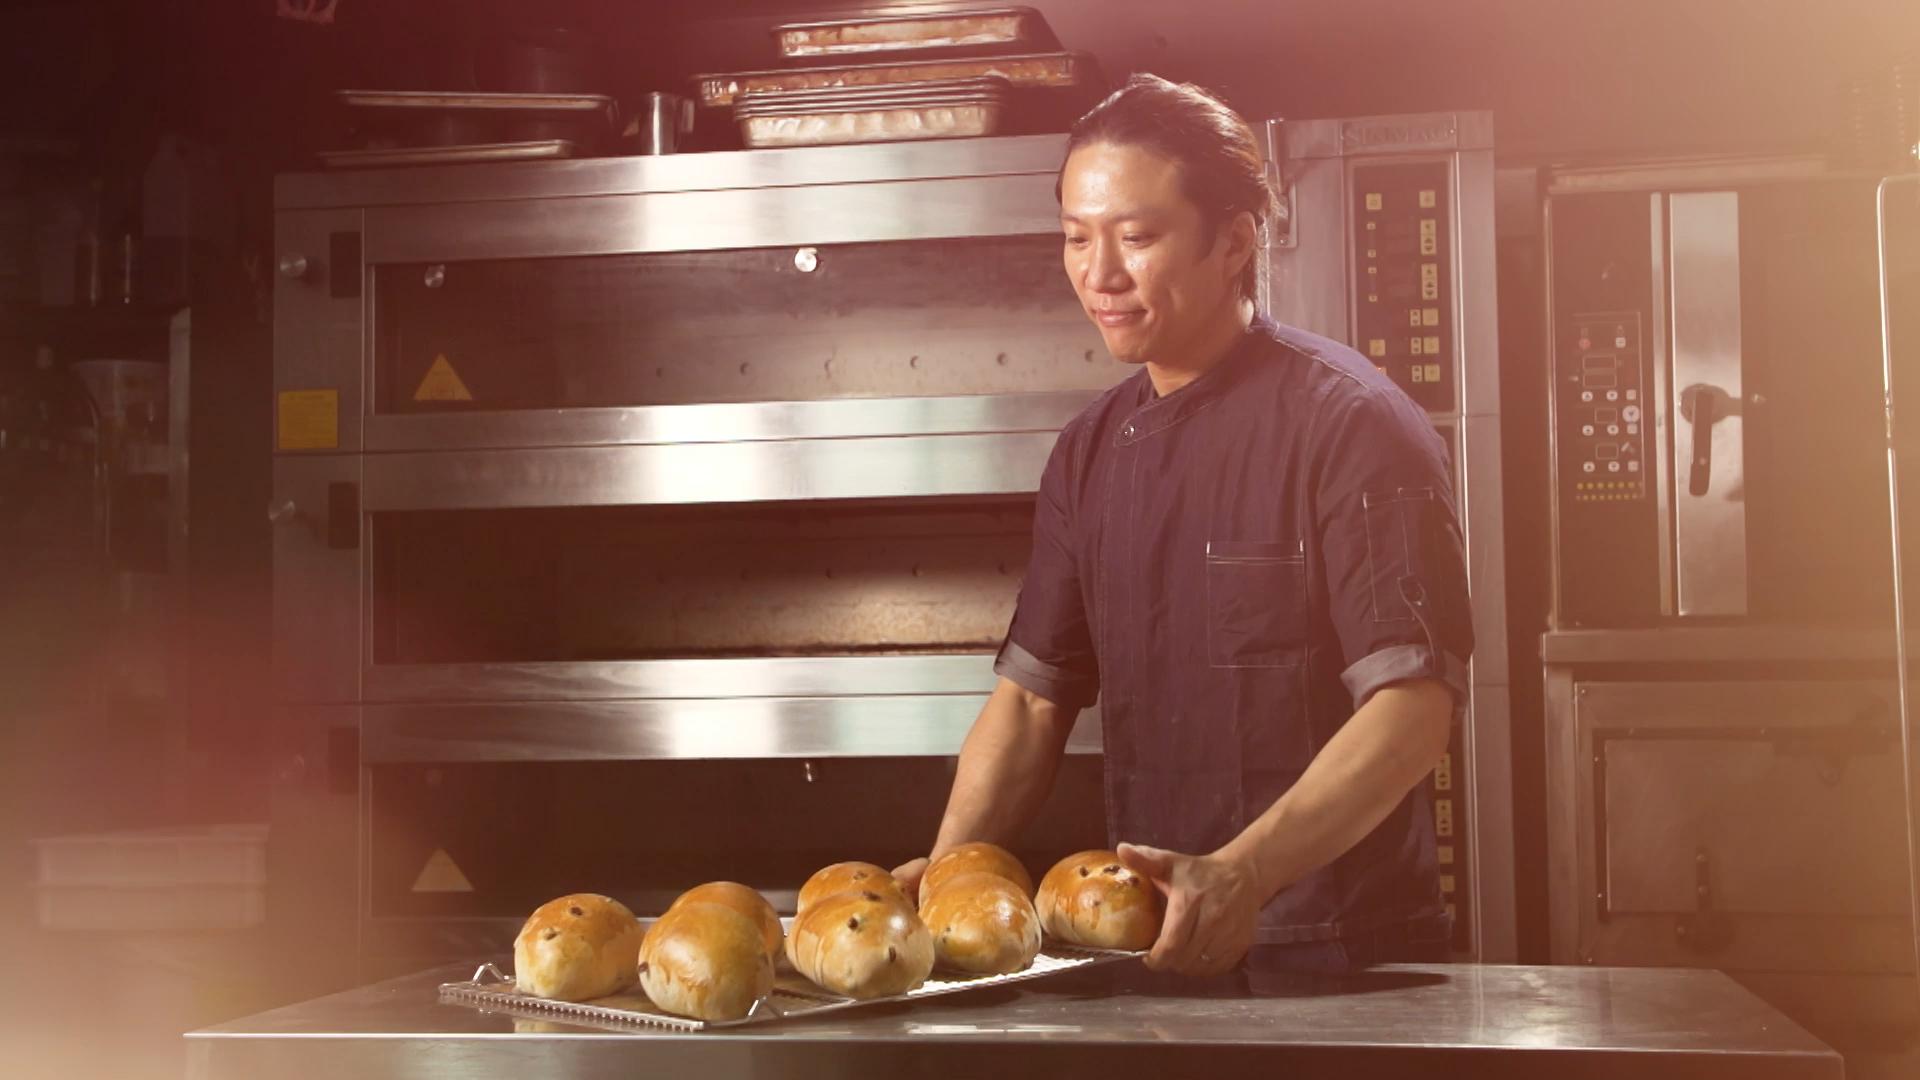 文敬龙, 加入面包制作行业已经超过二十年。做面包不单是他的工作，更是他的第二生命，他希望通过自己经营的面包店，改变大众对港式面包的印象。